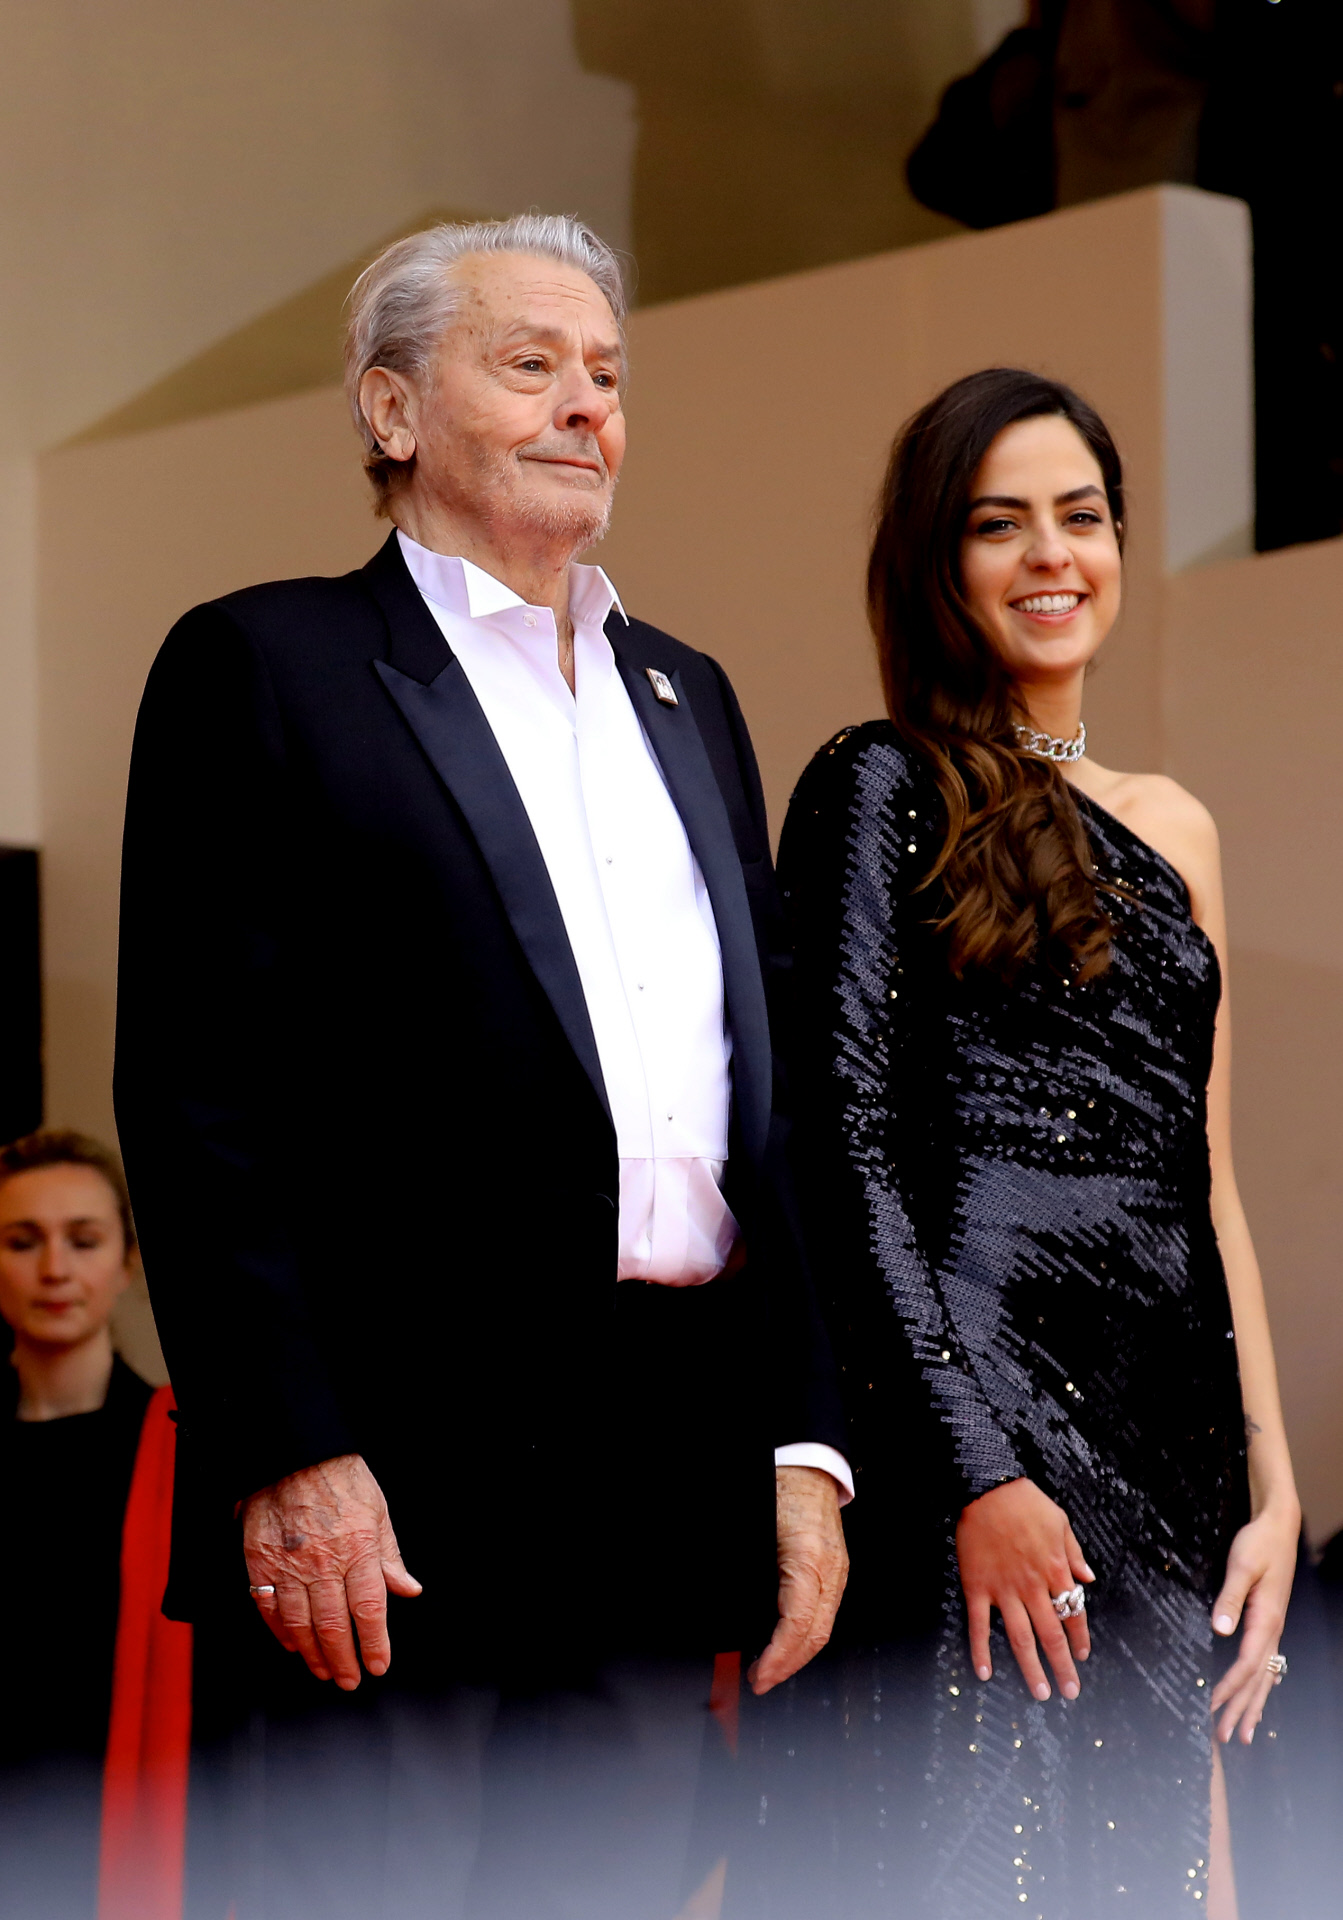 Alain Delon y su hija Anouchka Delon en la premiere de una película / Gtres